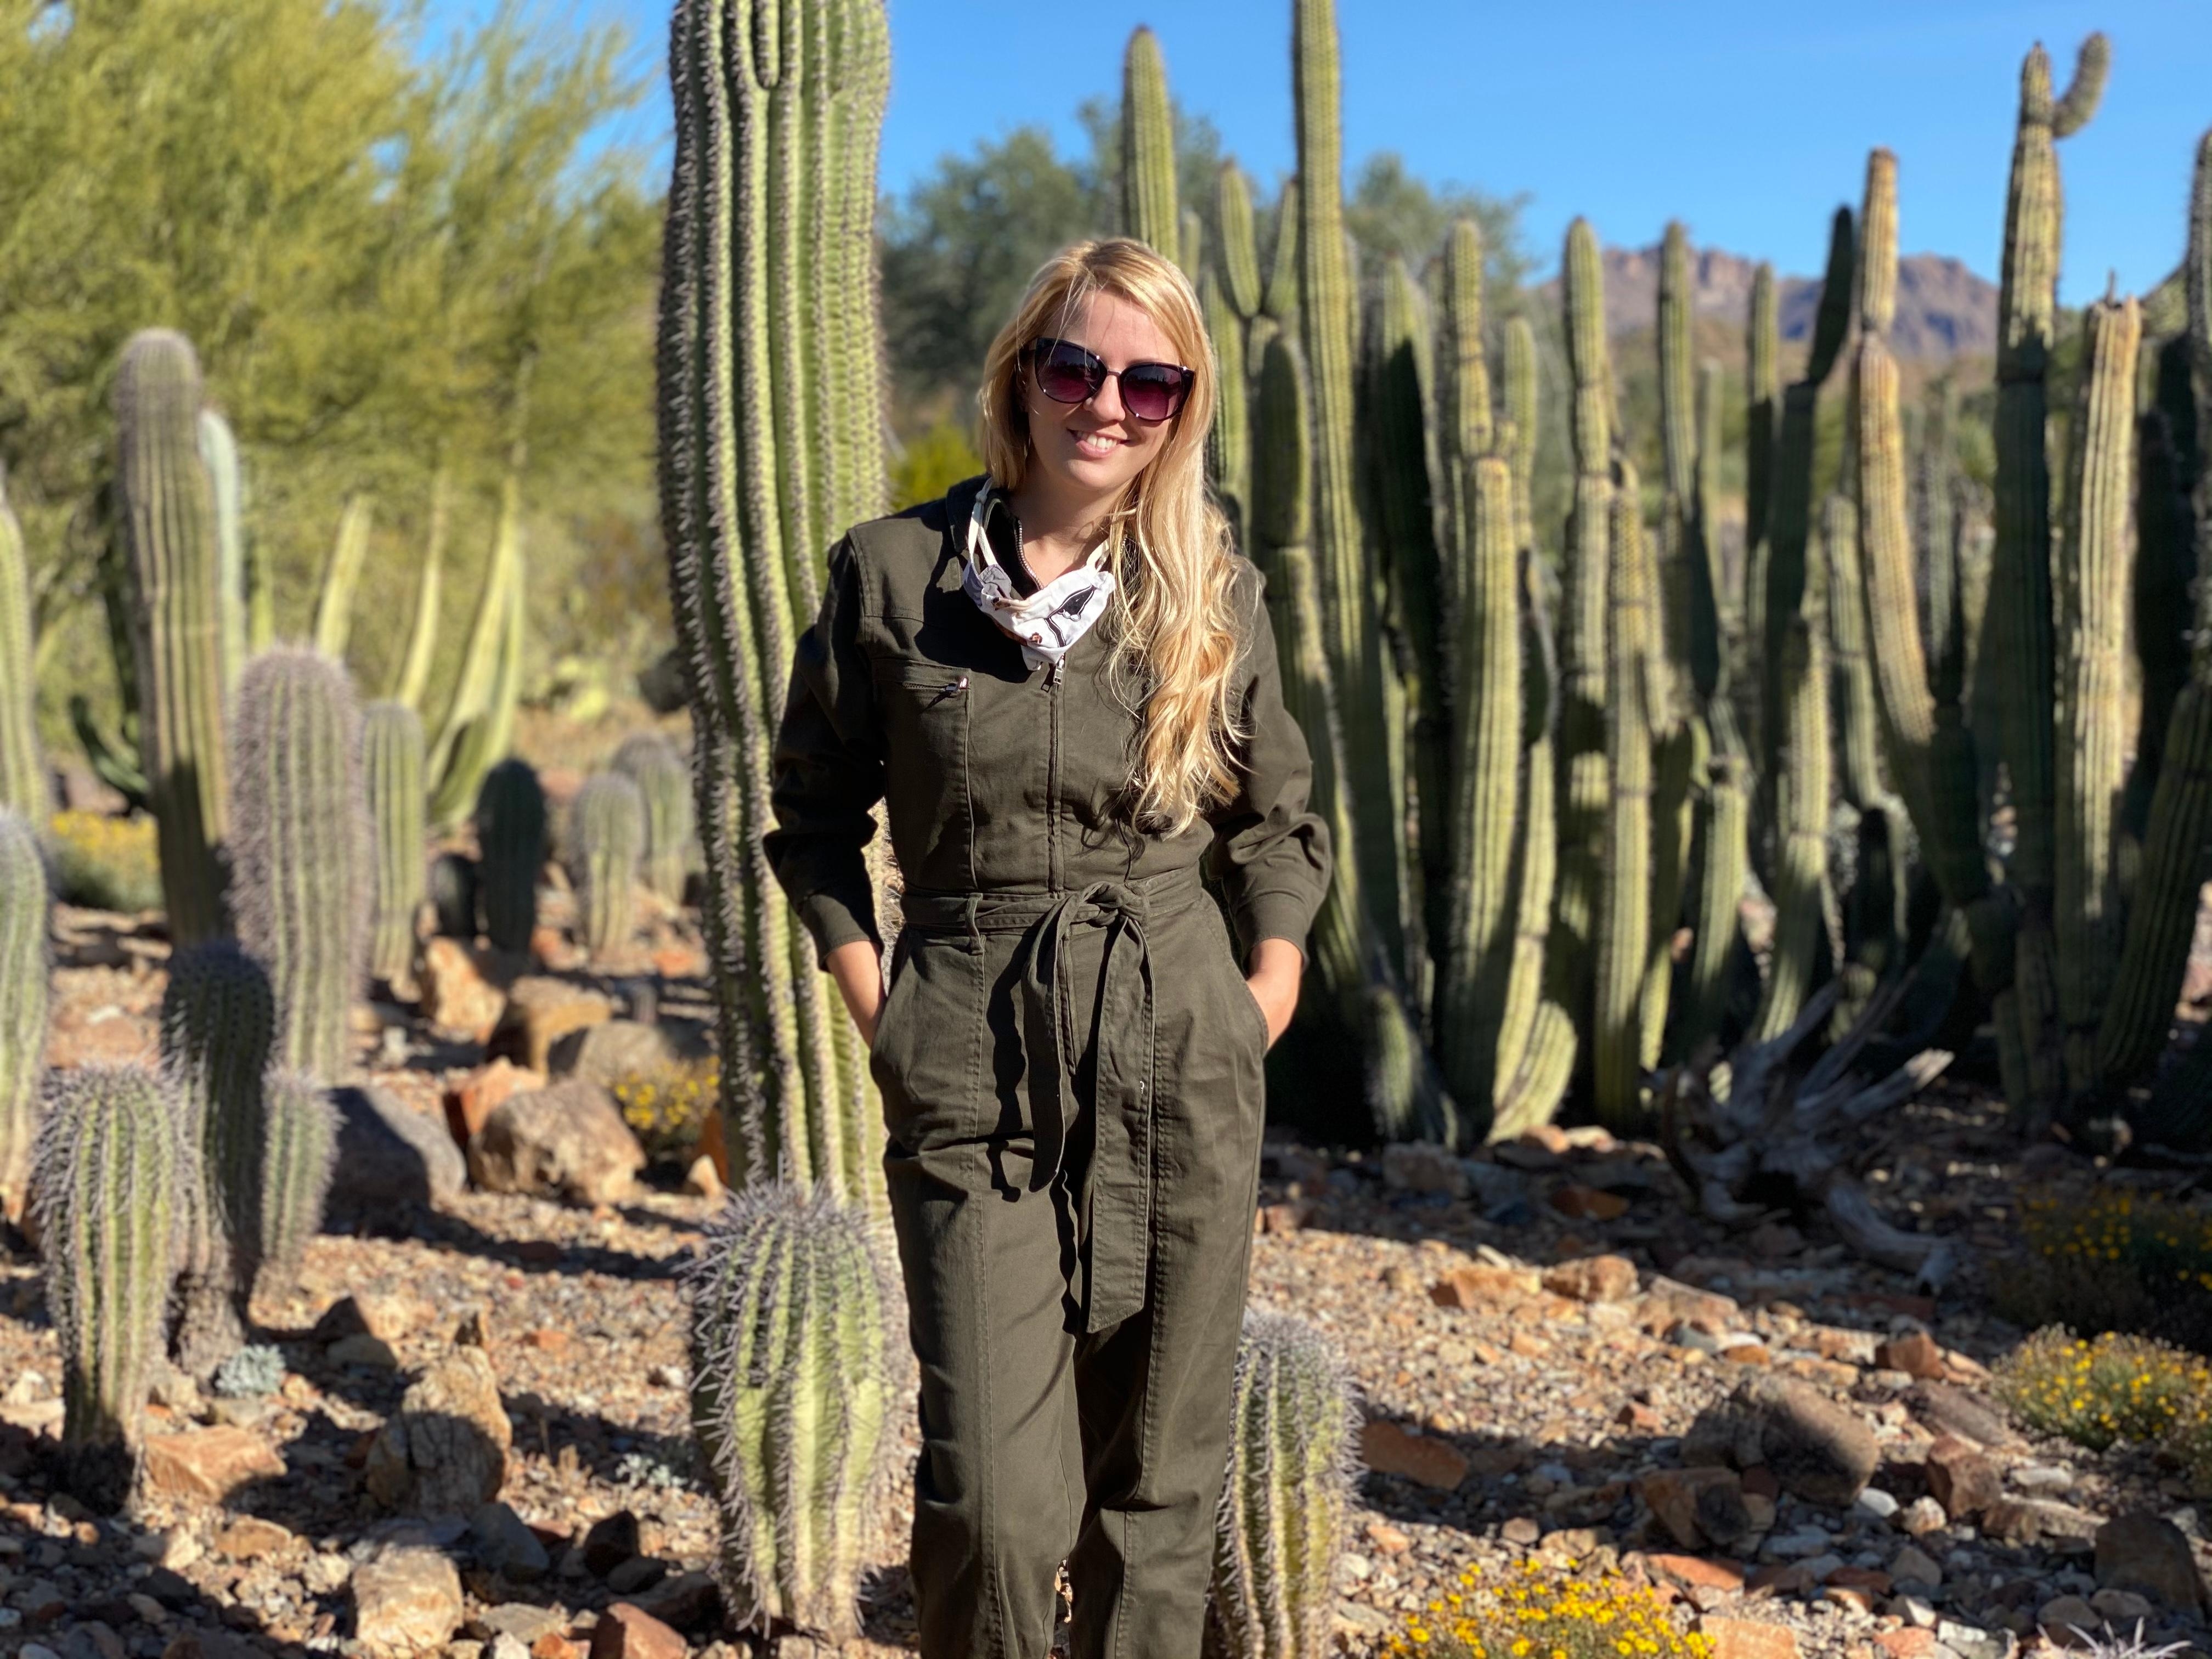 Letztes Jahr bin ich wegen meiner großen Sukkulenten- und Kaktusliebe nach Arizona gezogen #pflanzenliebe